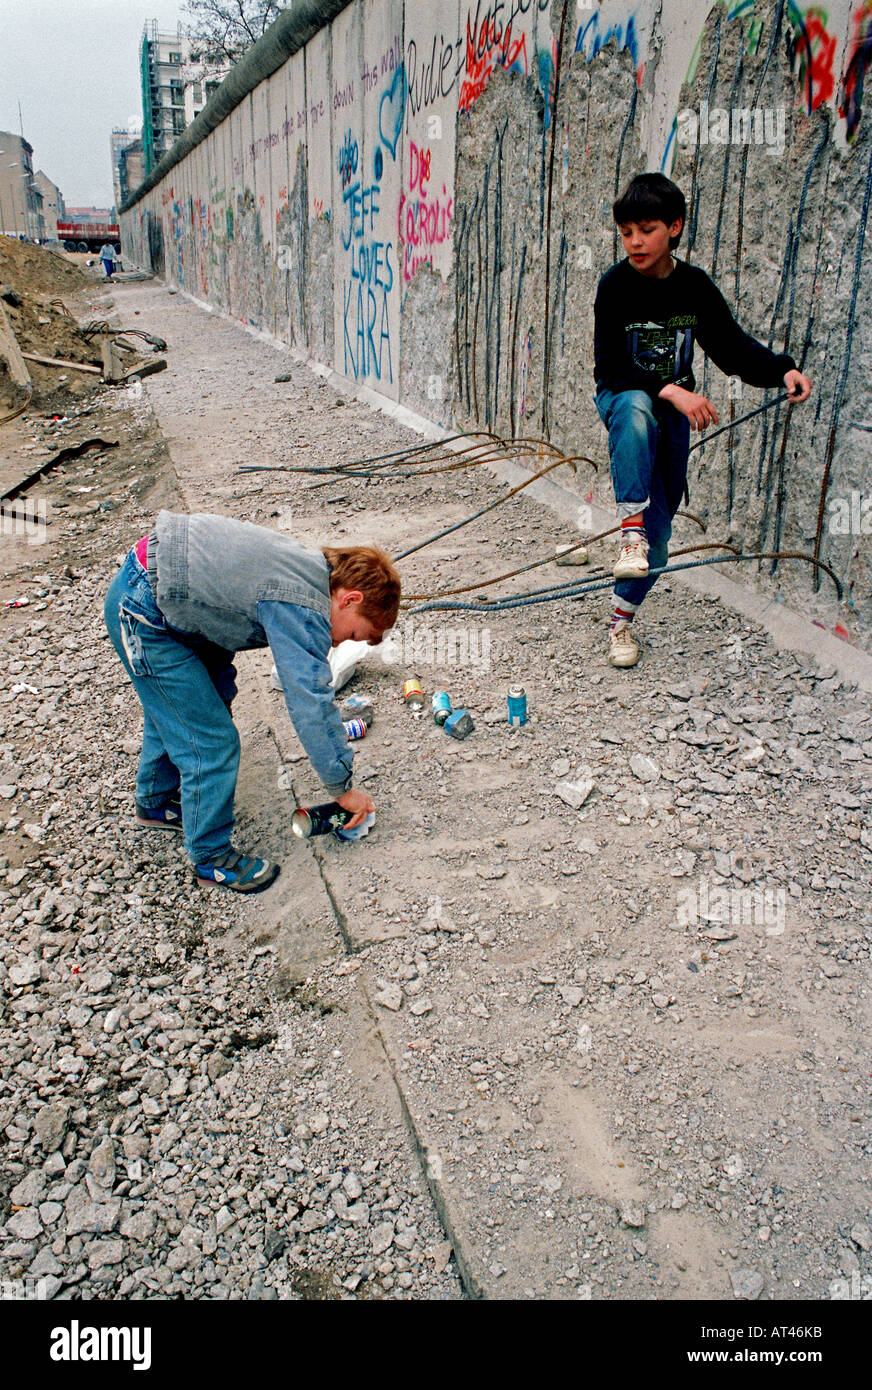 La chute du mur de Berlin, 1989. Une aire de pulvérisation de peinture rocks à vendre en tant que véritable graffiti de la mur. Banque D'Images